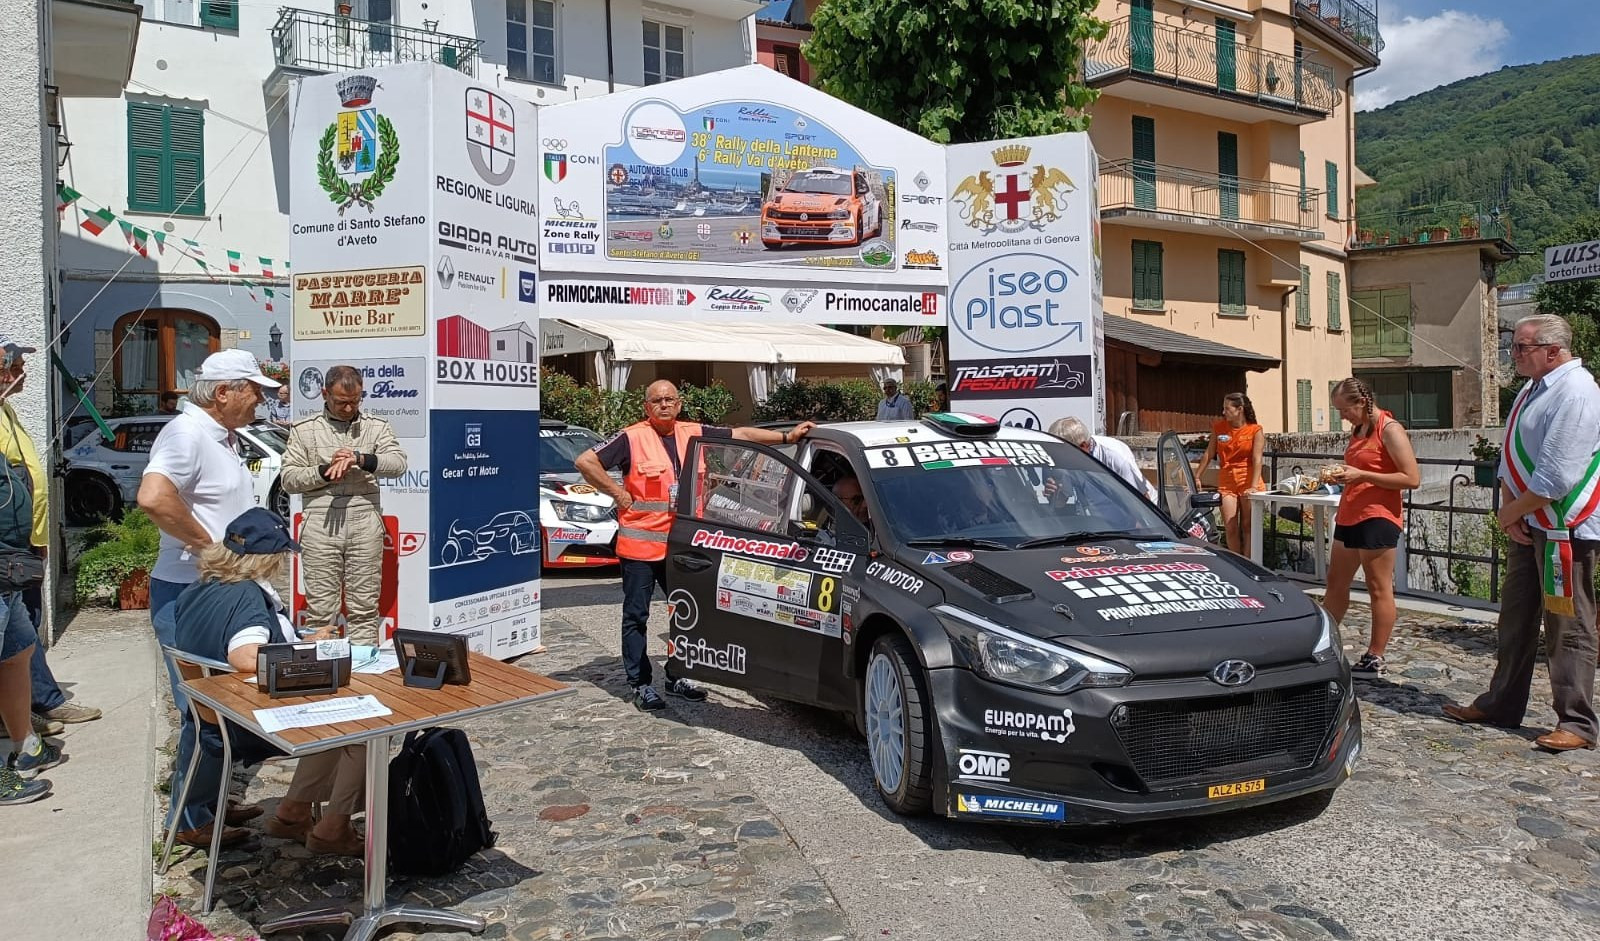 Rally della Lanterna, PS Monte Penna 2 Hyundai R5 Primocanale40 di Rossi-Zanini